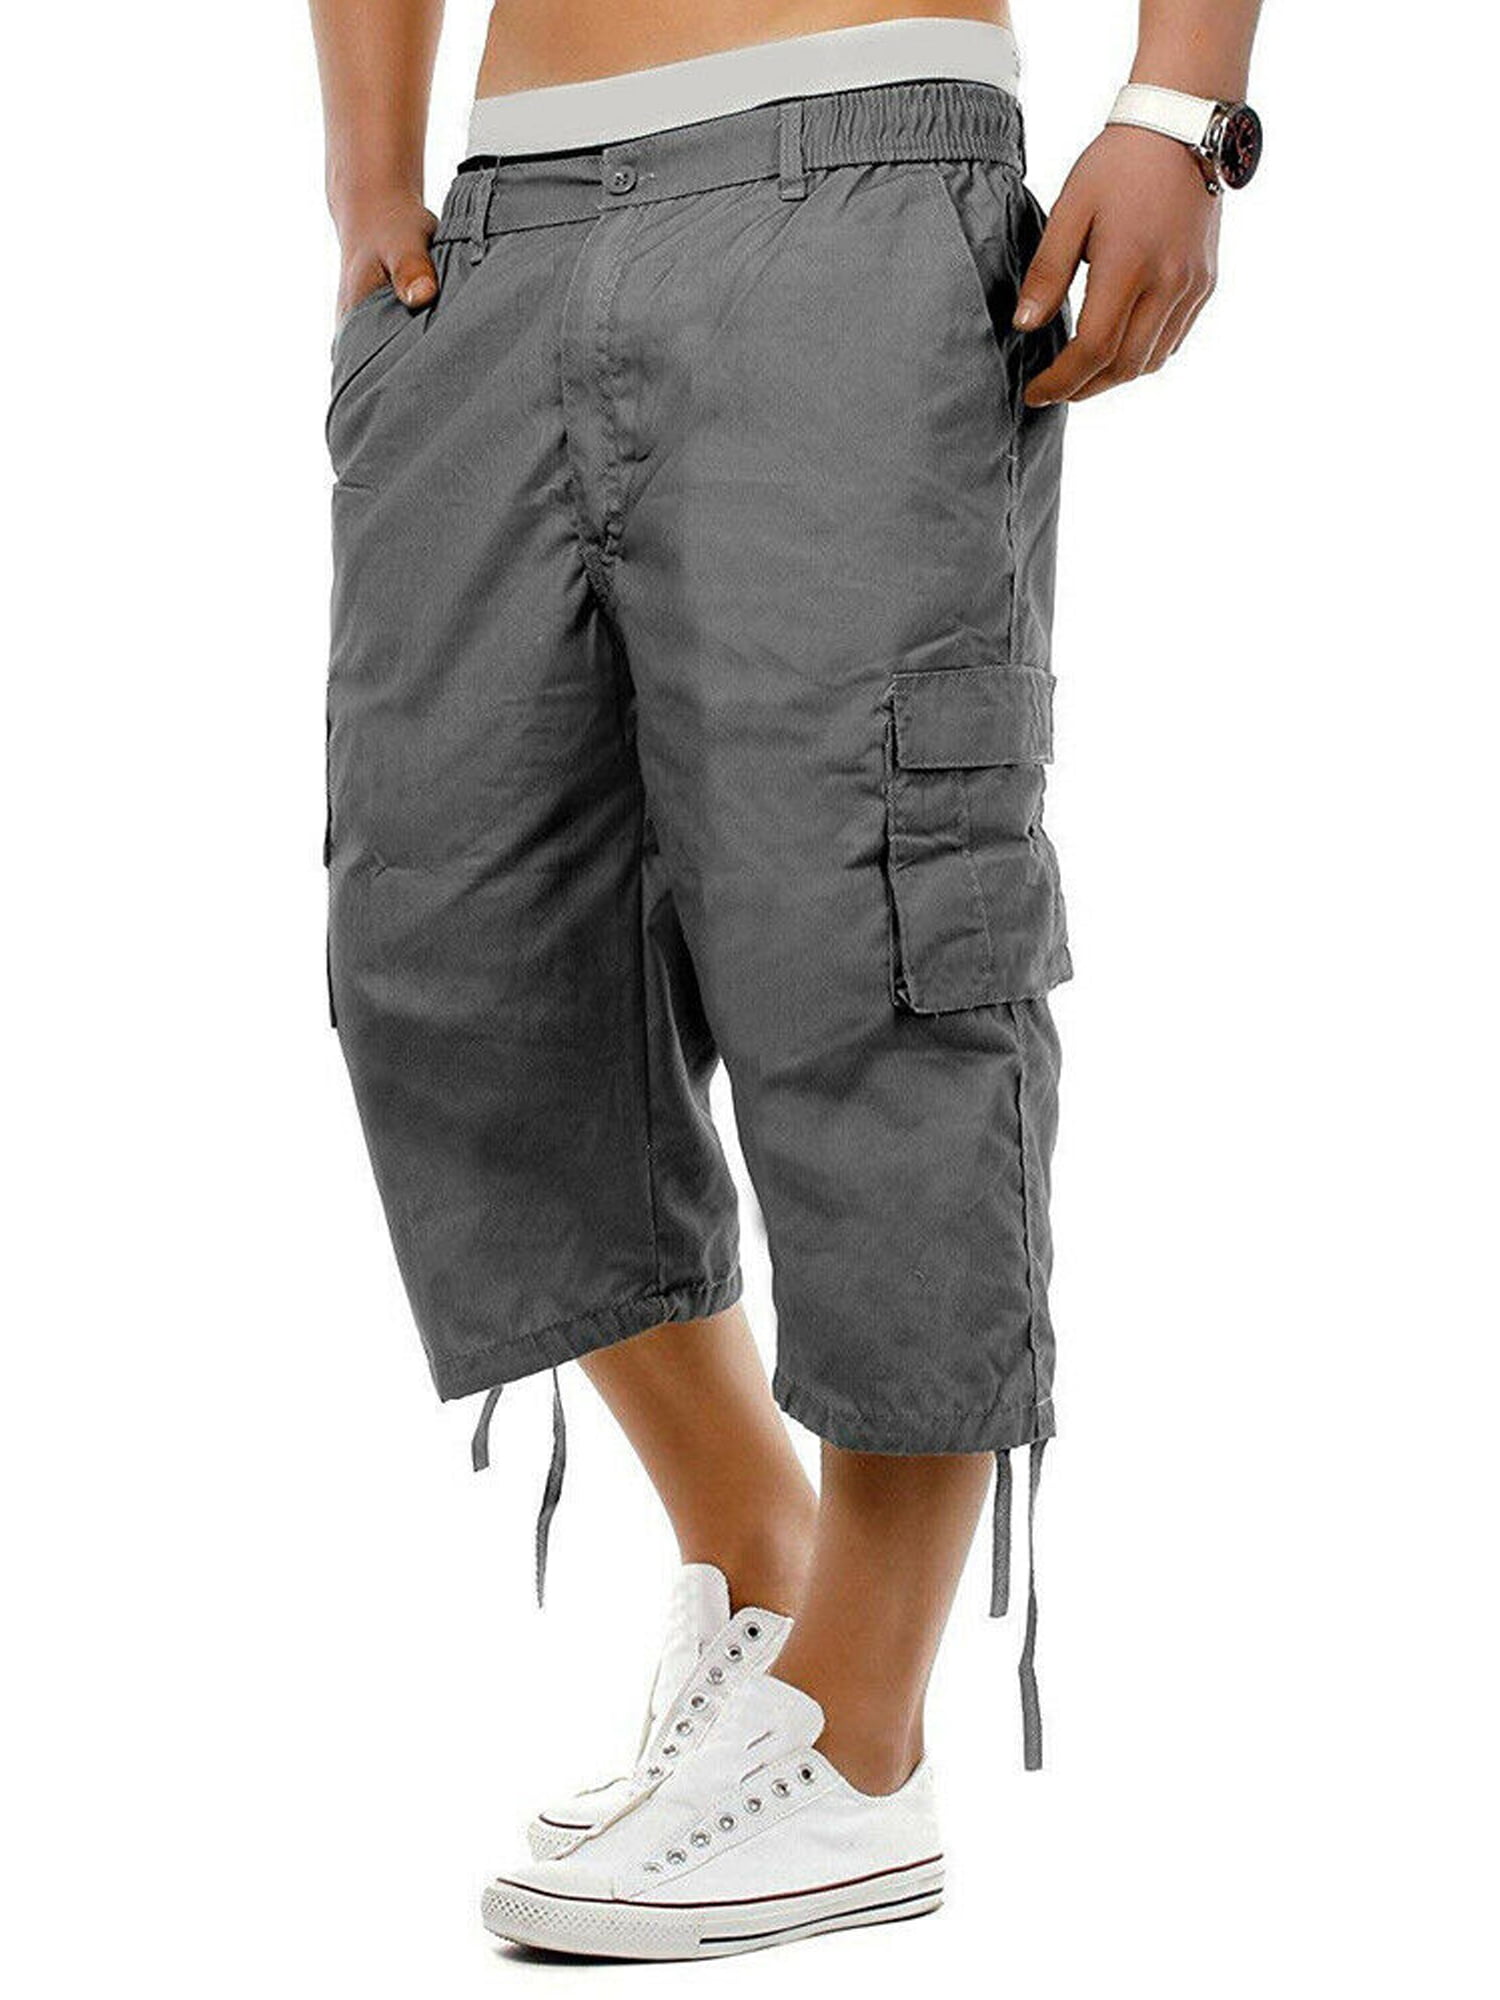 MERSARIPHY Men's Cargo Capri Pants